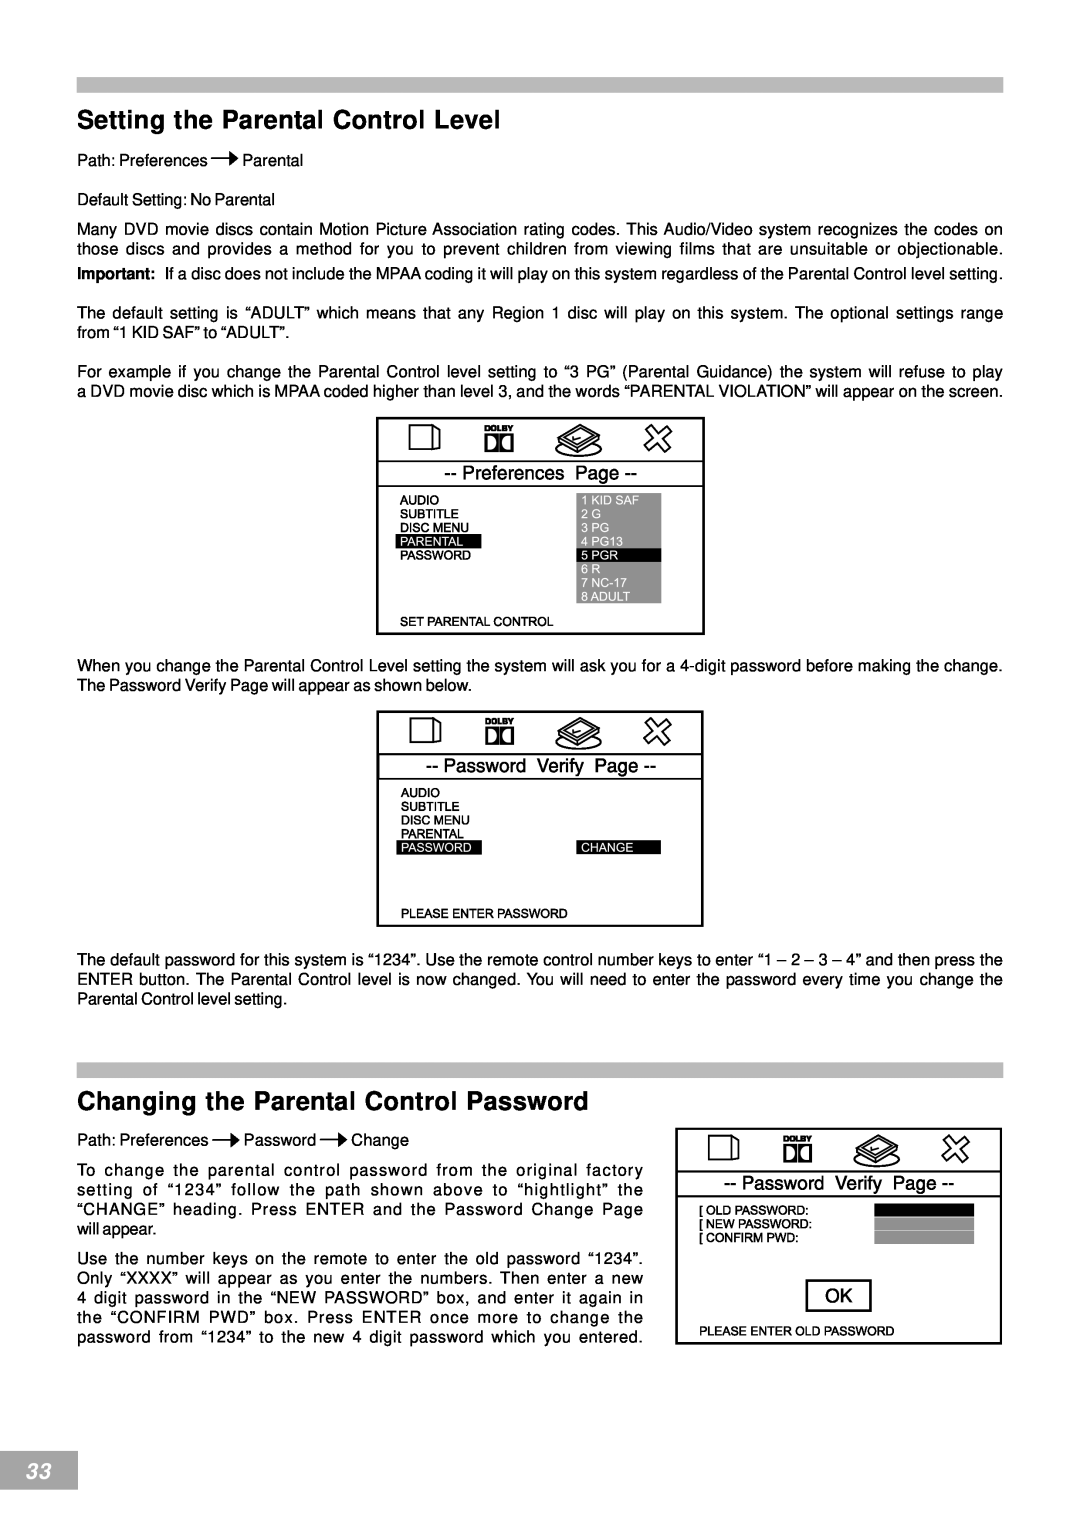 Emerson AV50 owner manual Setting the Parental Control Level, Changing the Parental Control Password 